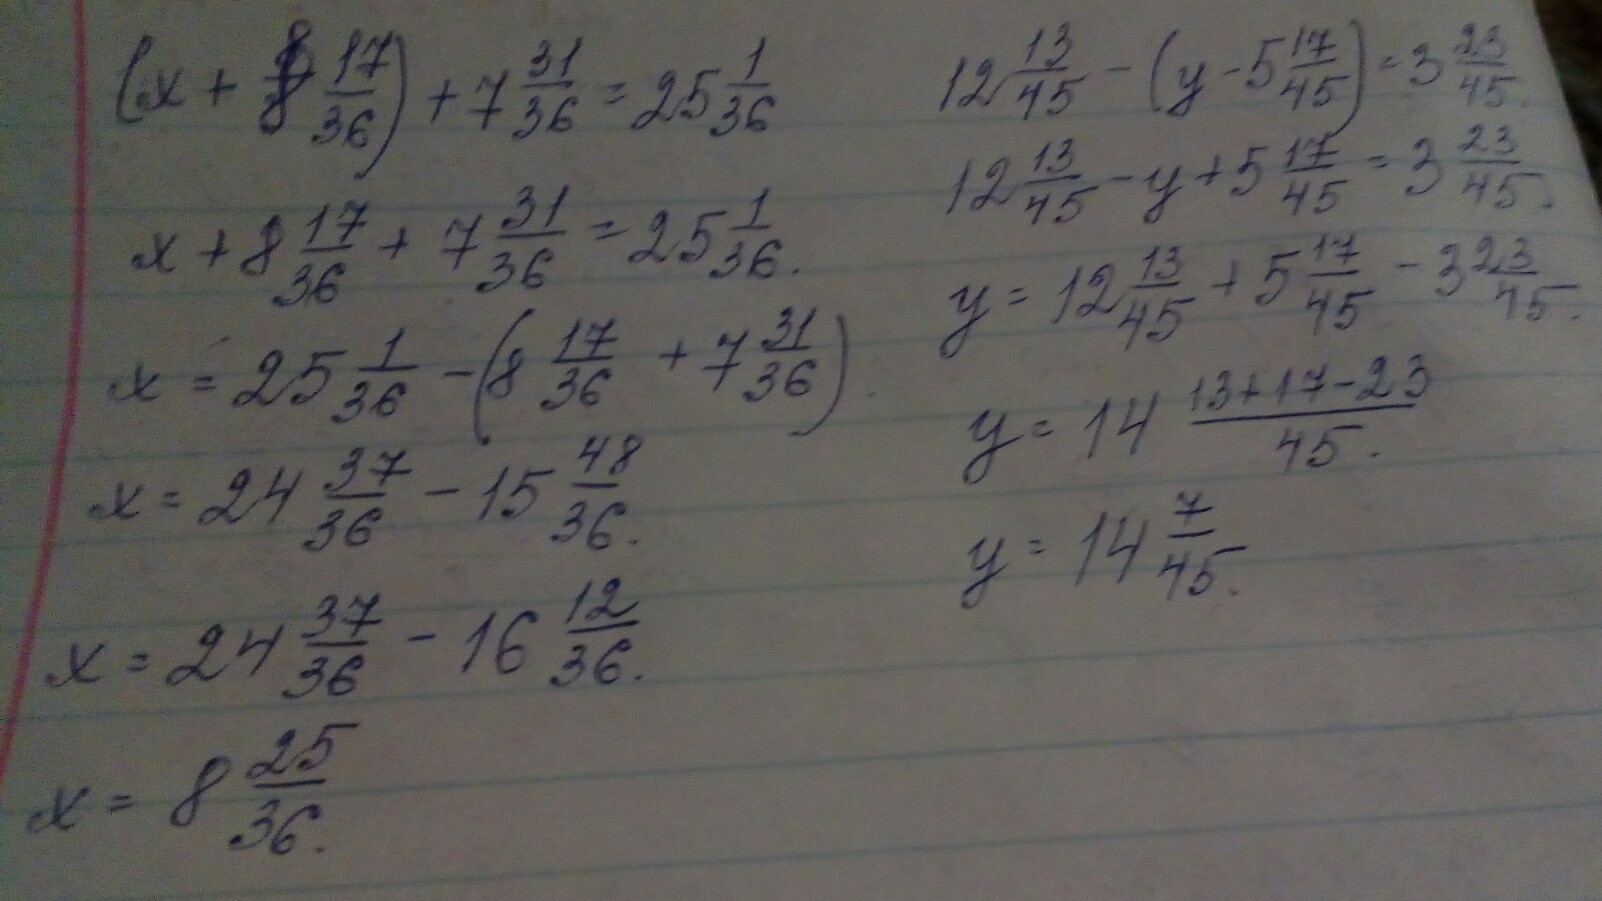 1 14 15 1 13 45. 17-Х=8. Реши уравнение x + 8 7 17/36 + 31 36. Решение уравнения с комментированием. X 8 17/36 7 31/36 25 1/36.